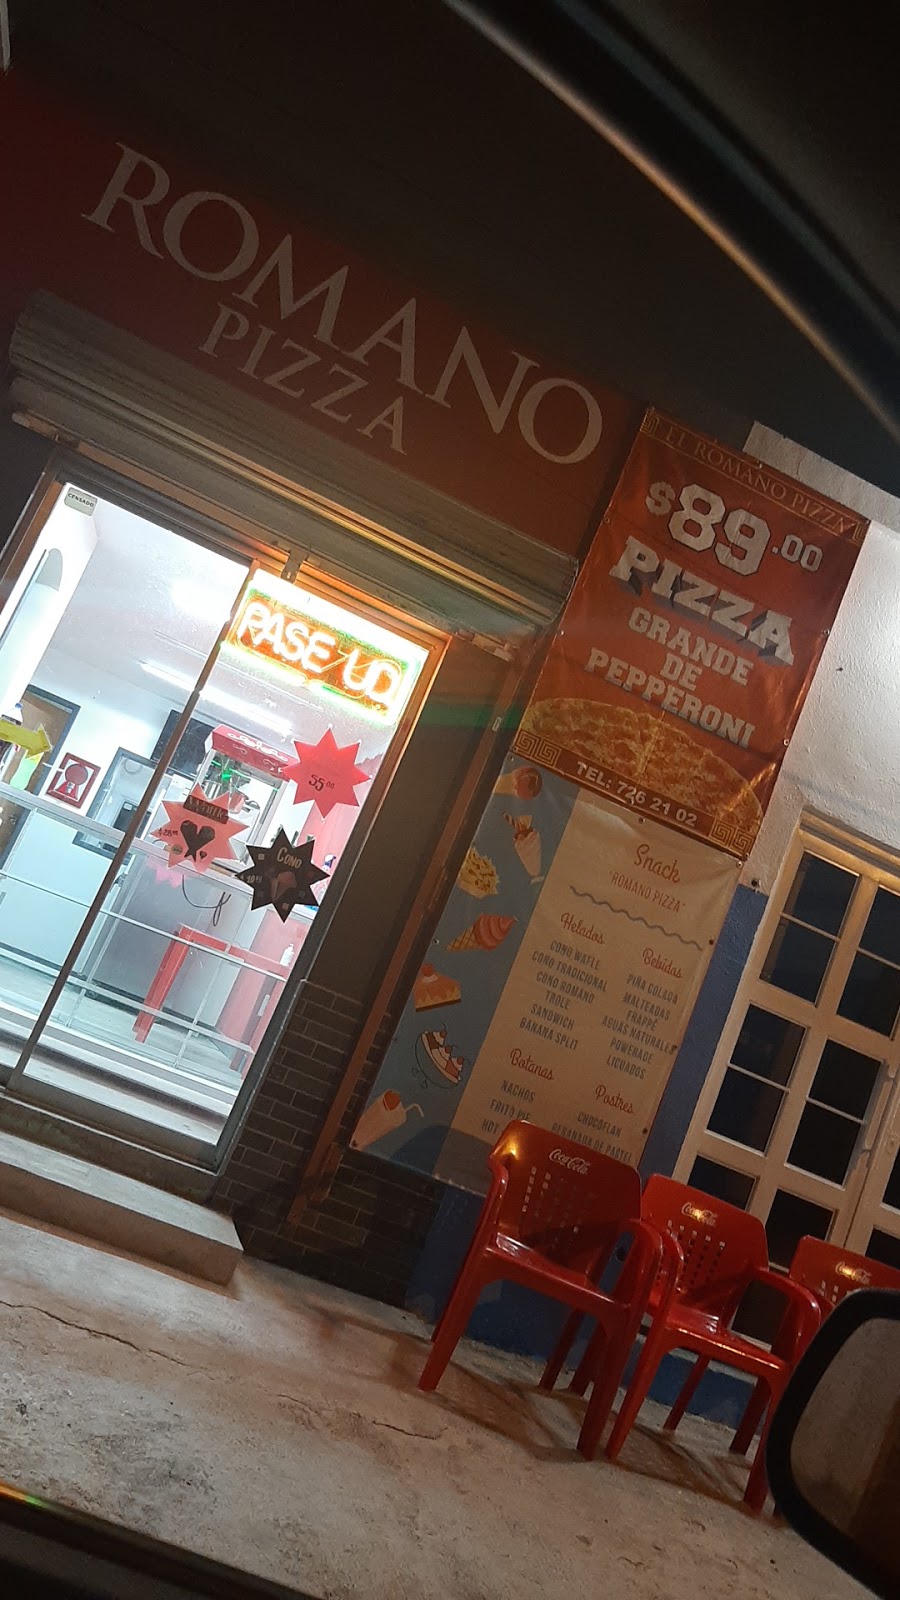 Pizzería Romano | Emilio Madero 156, Manuel Cavazos Lerma, 88284 Nuevo Laredo, Tamps., Mexico | Phone: 867 117 4613